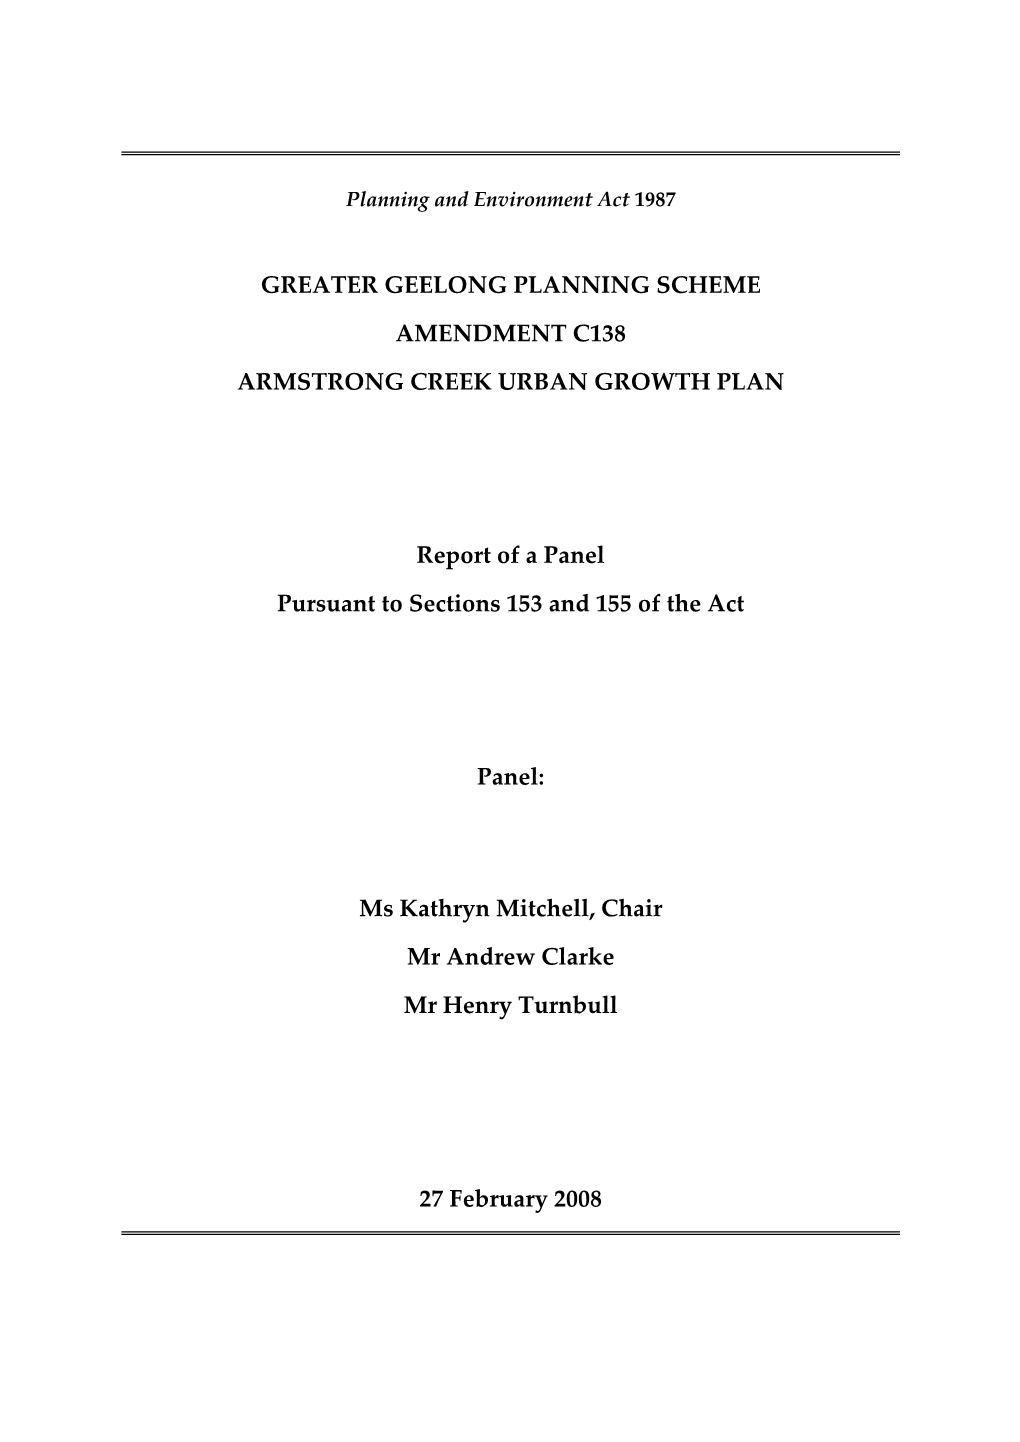 Greater Geelong Planning Scheme Amendment C138